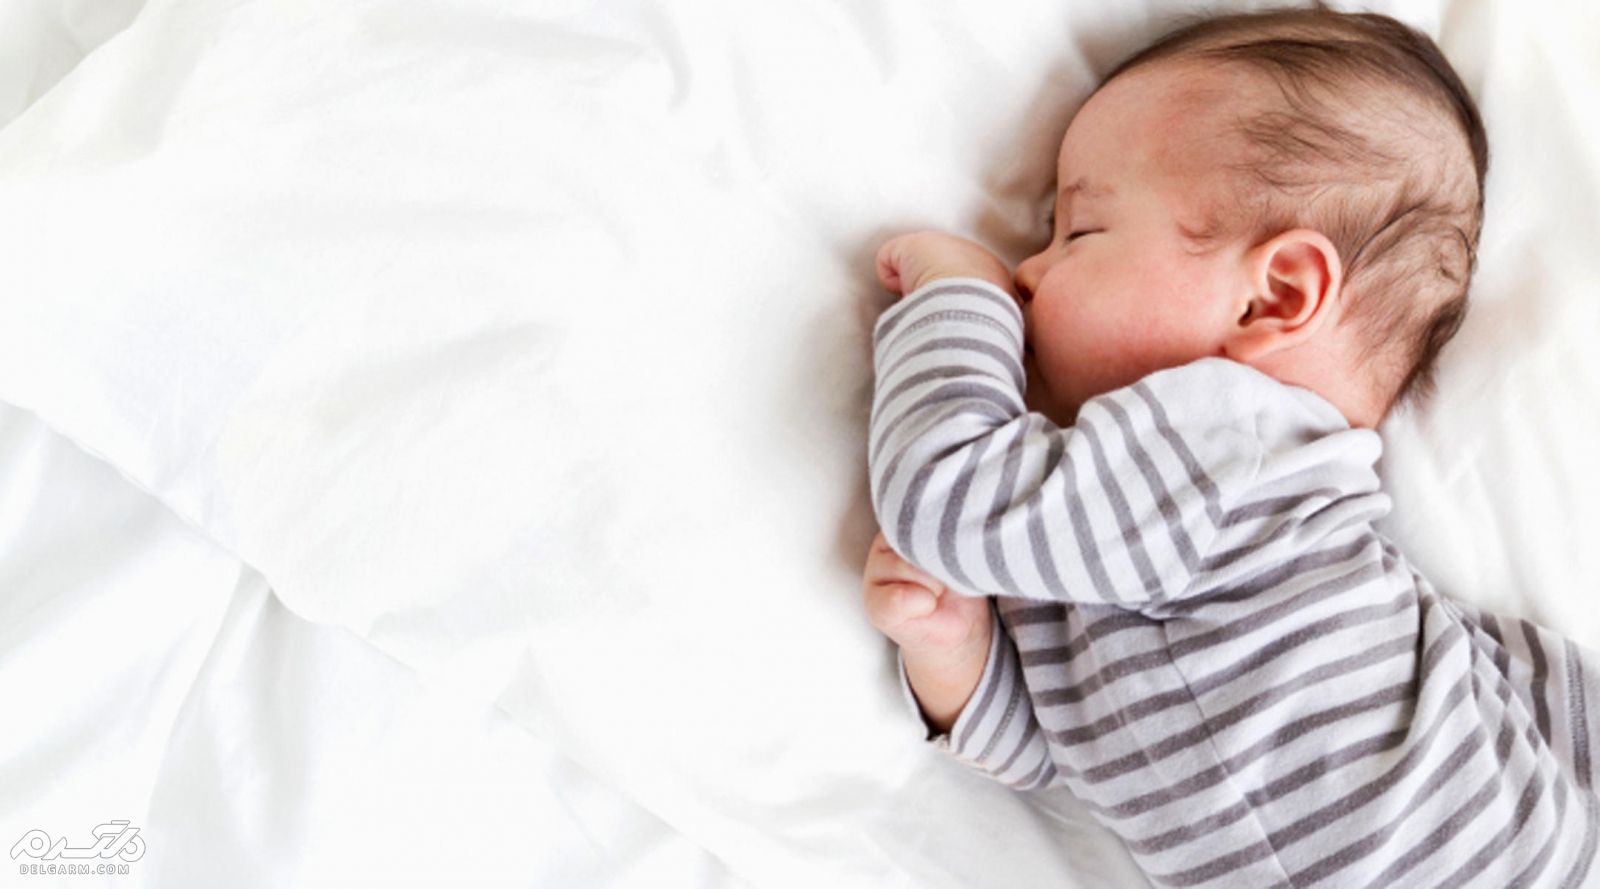 چه زمان تنفس نوزاد غیرطبیعی است؟